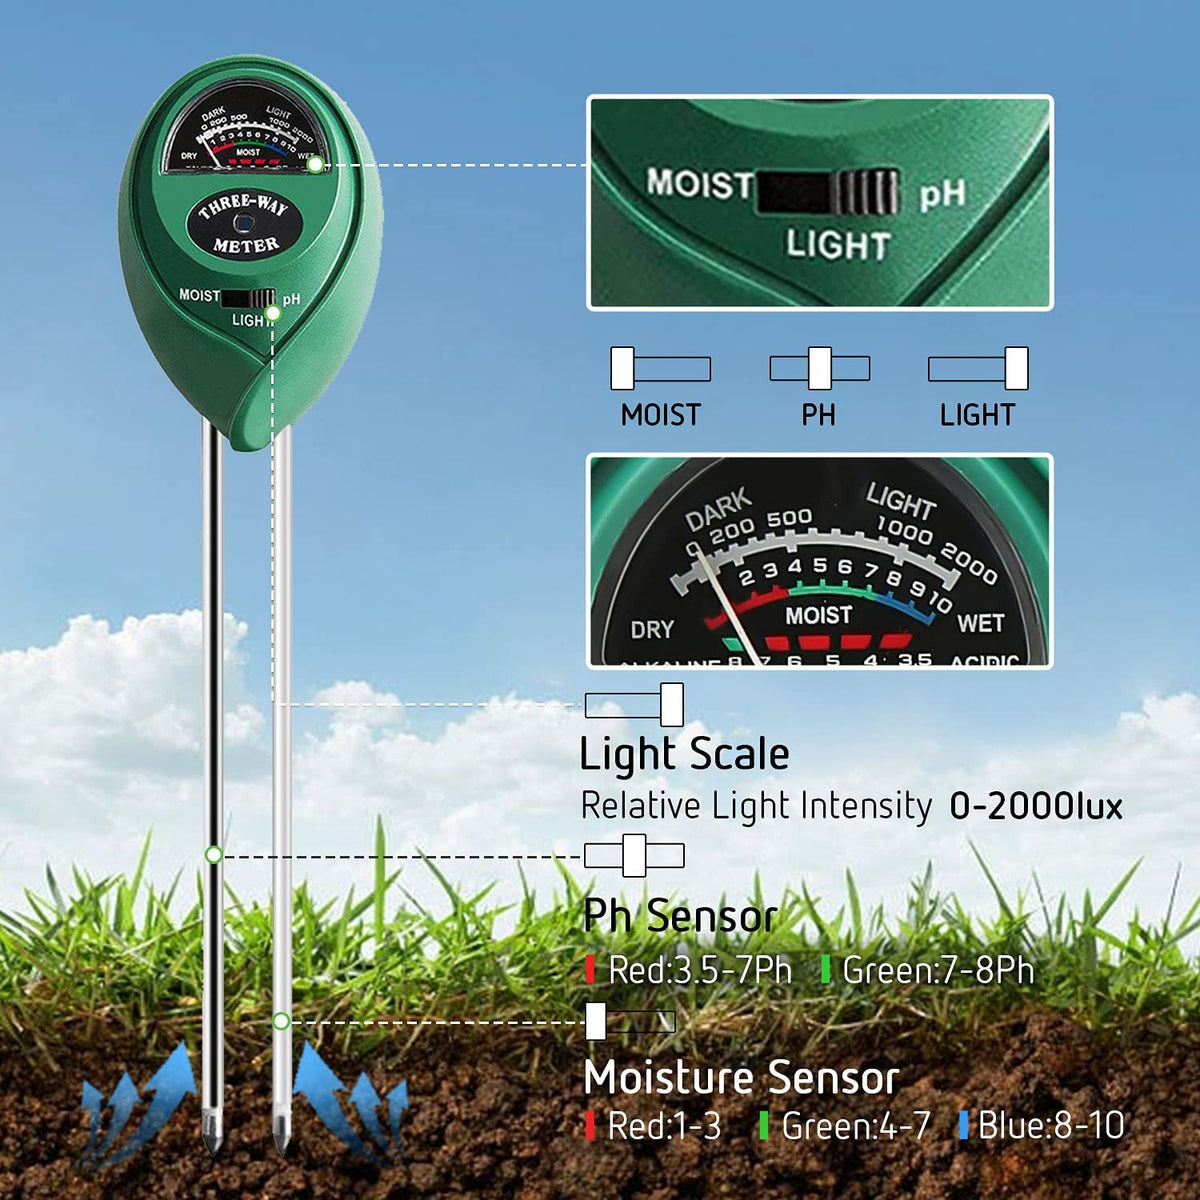 Brown Farm Promote Plants Healthy Growth Jellas Soil Moisture Meter 3 in 1 Soil Tester Kit Plant Moisture Sensor Meter/Light/pH Tester for Home Lawn Garden 